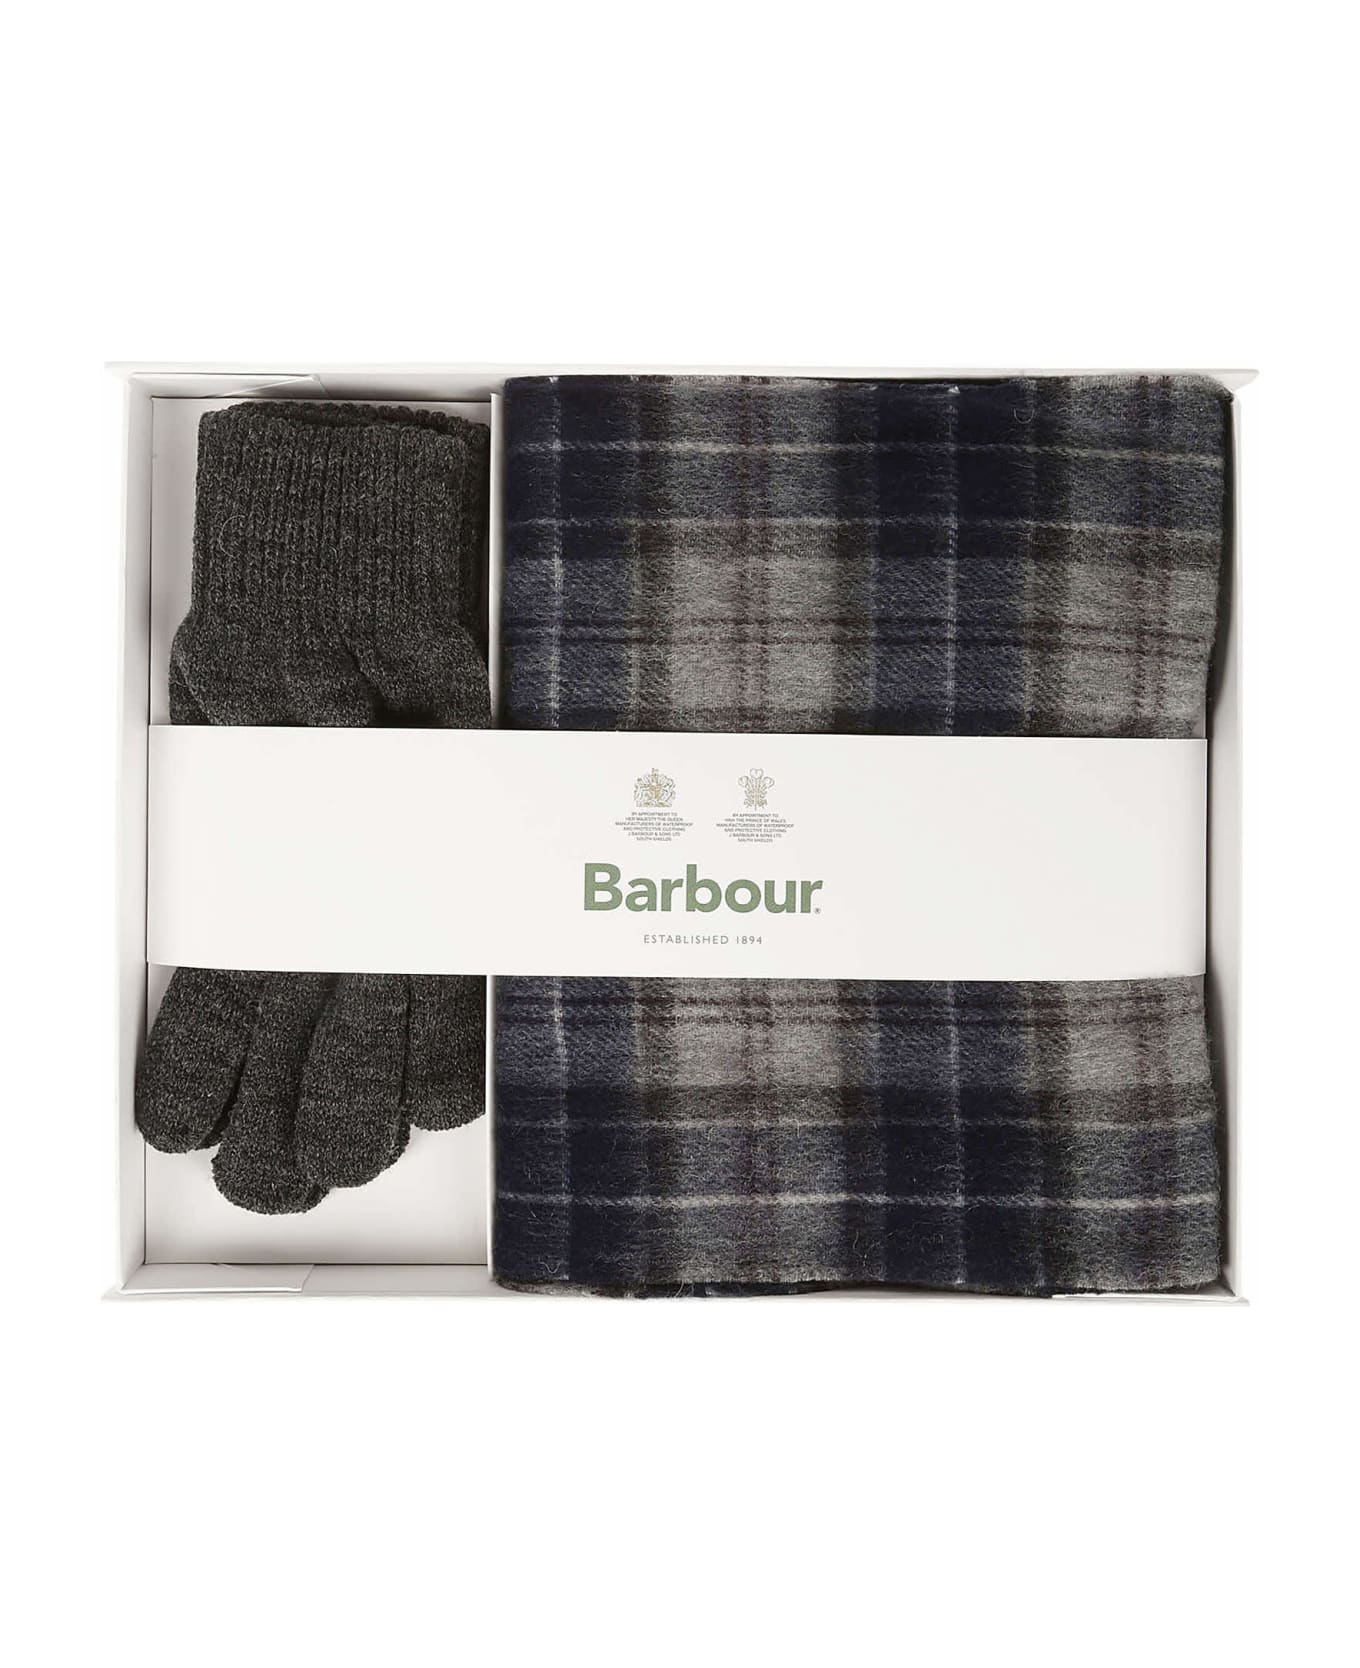 Barbour Scarf And Gloves Gift Set - Black Slate Tartan スカーフ